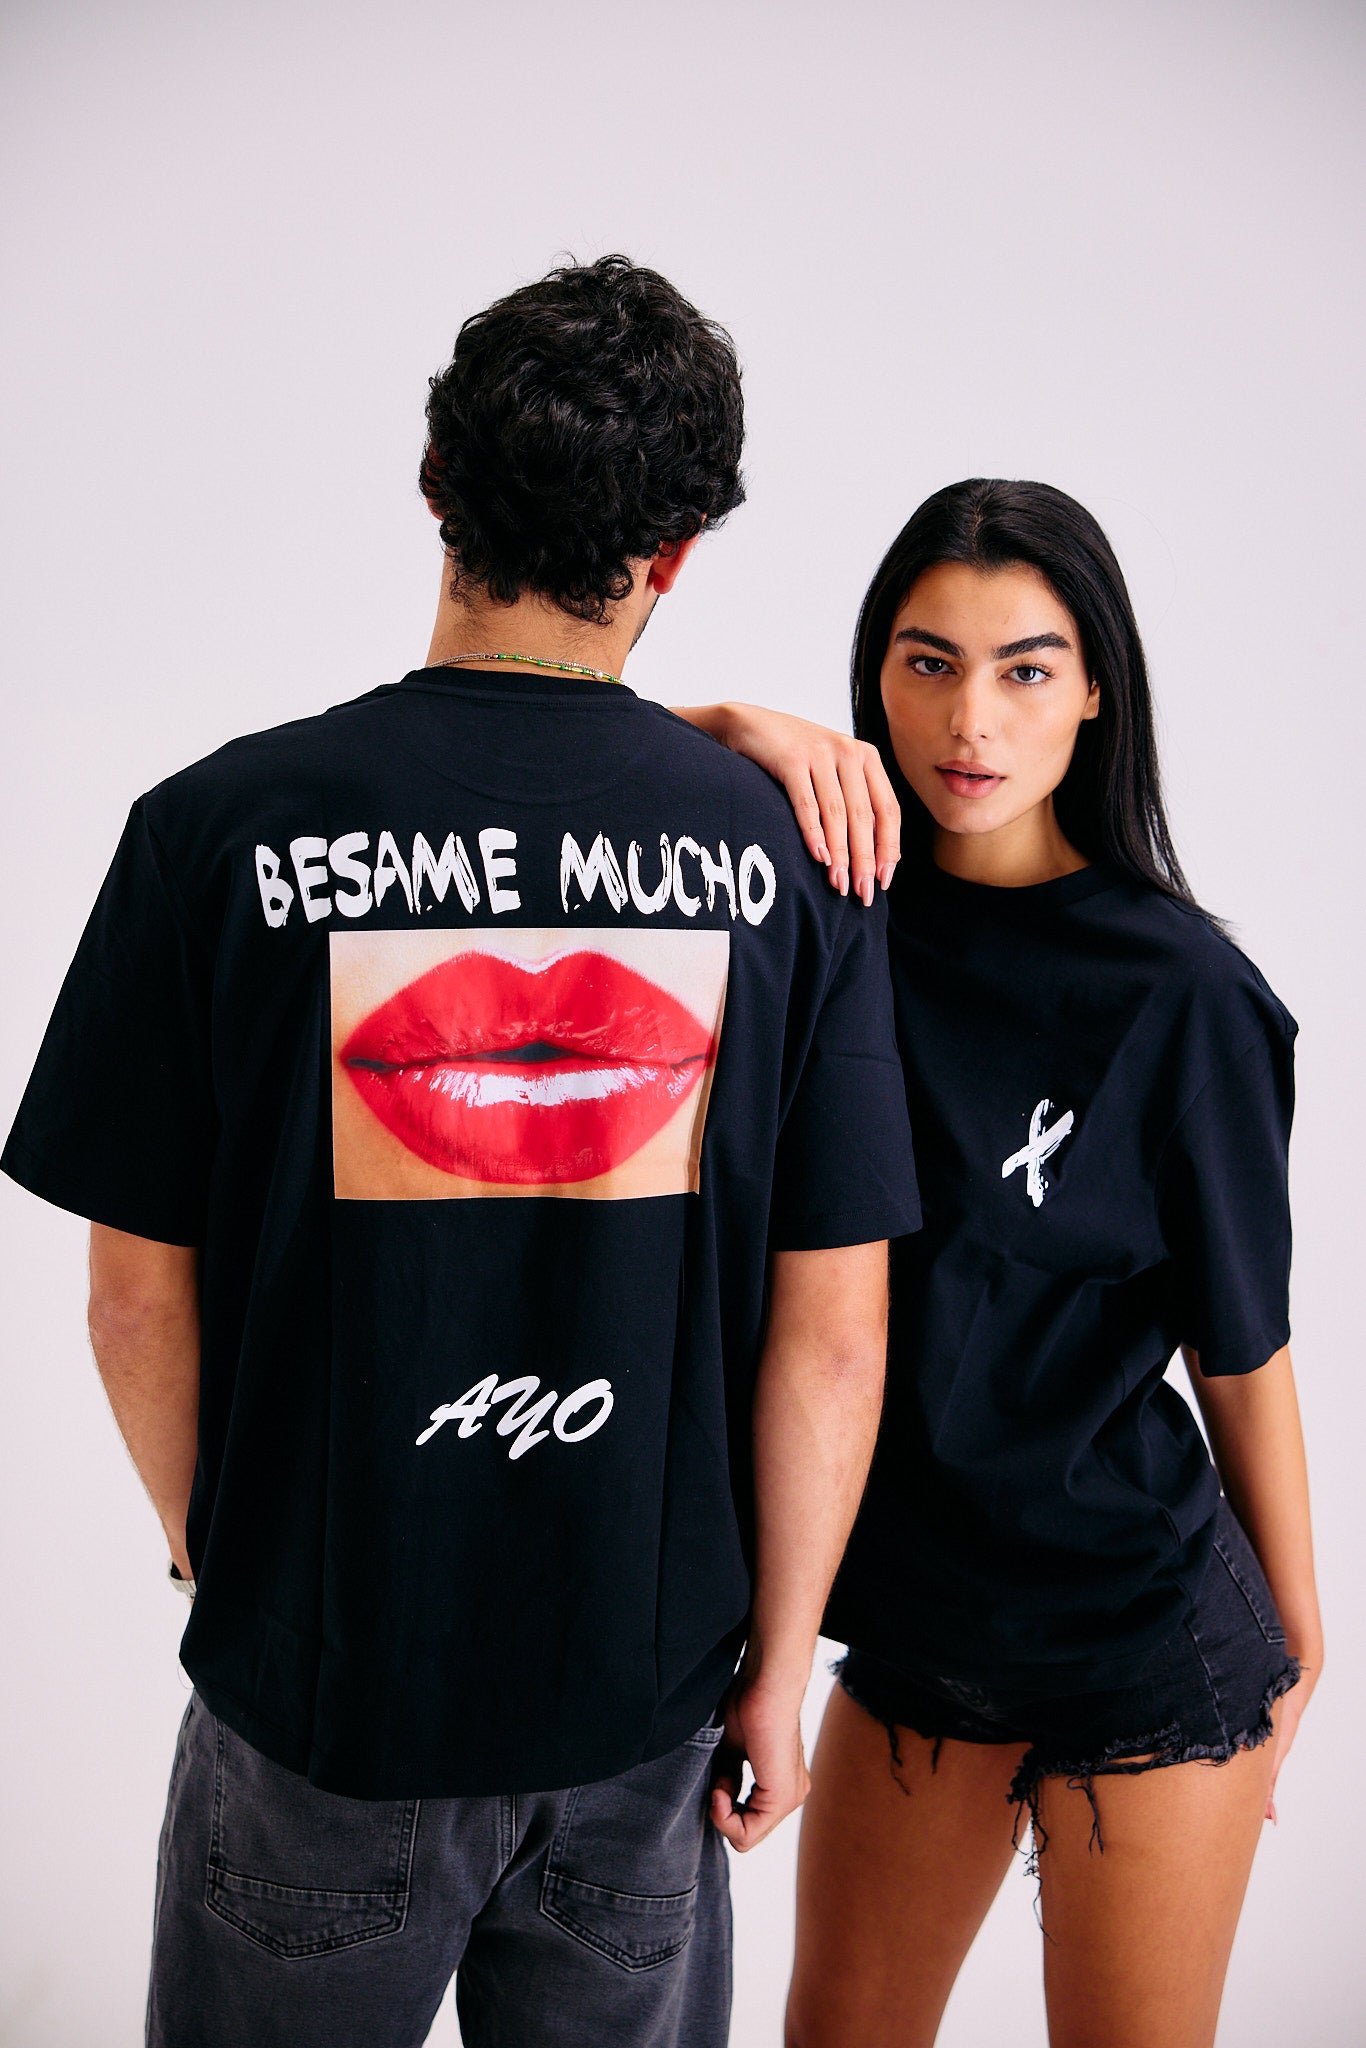 Besame Mucho T-shirt